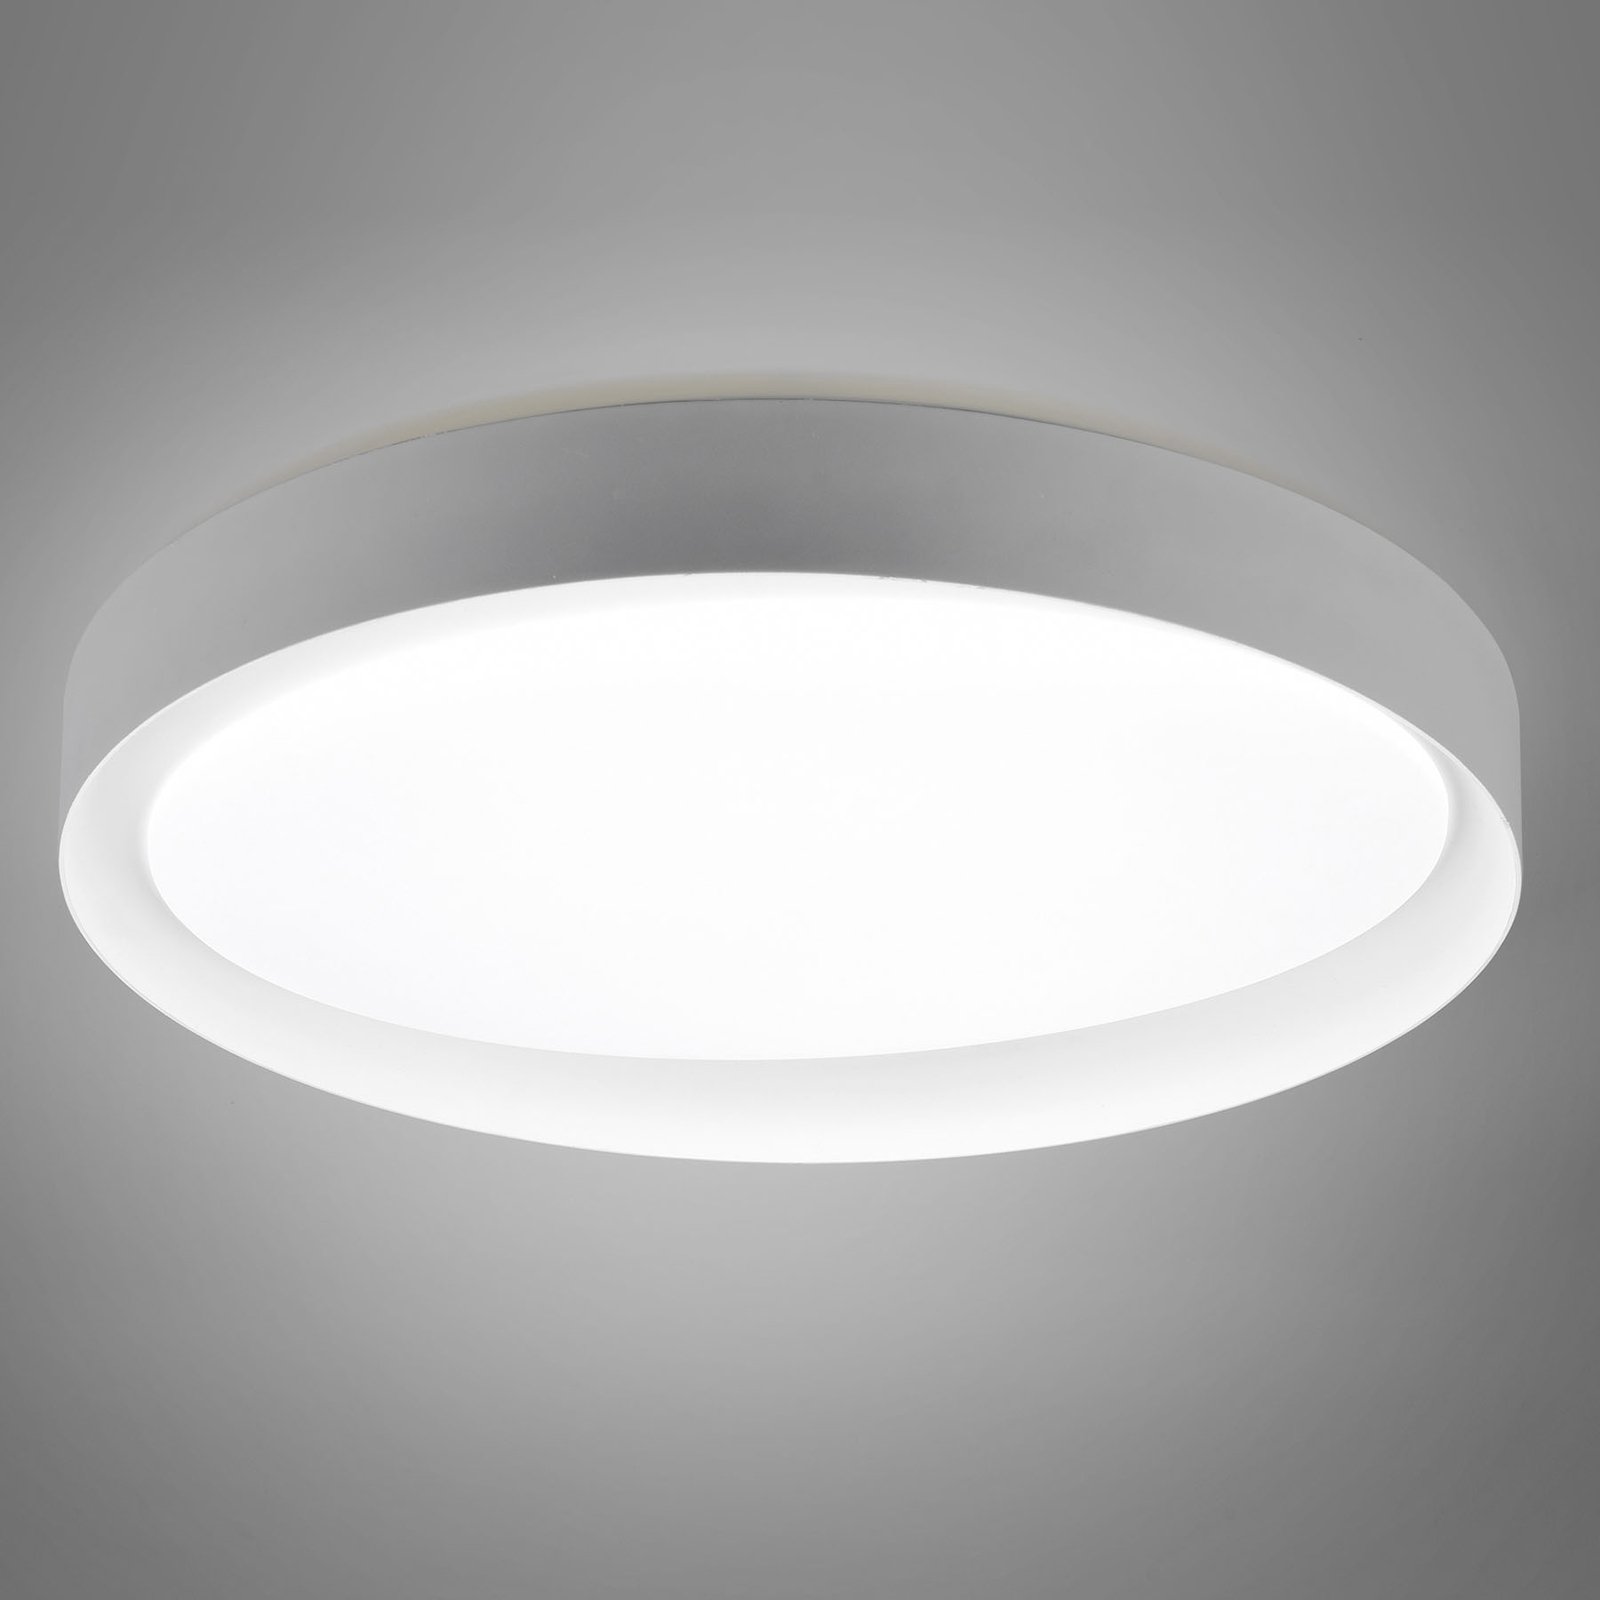 LED lámpa Zeta hangolható feh., szürke / feh.